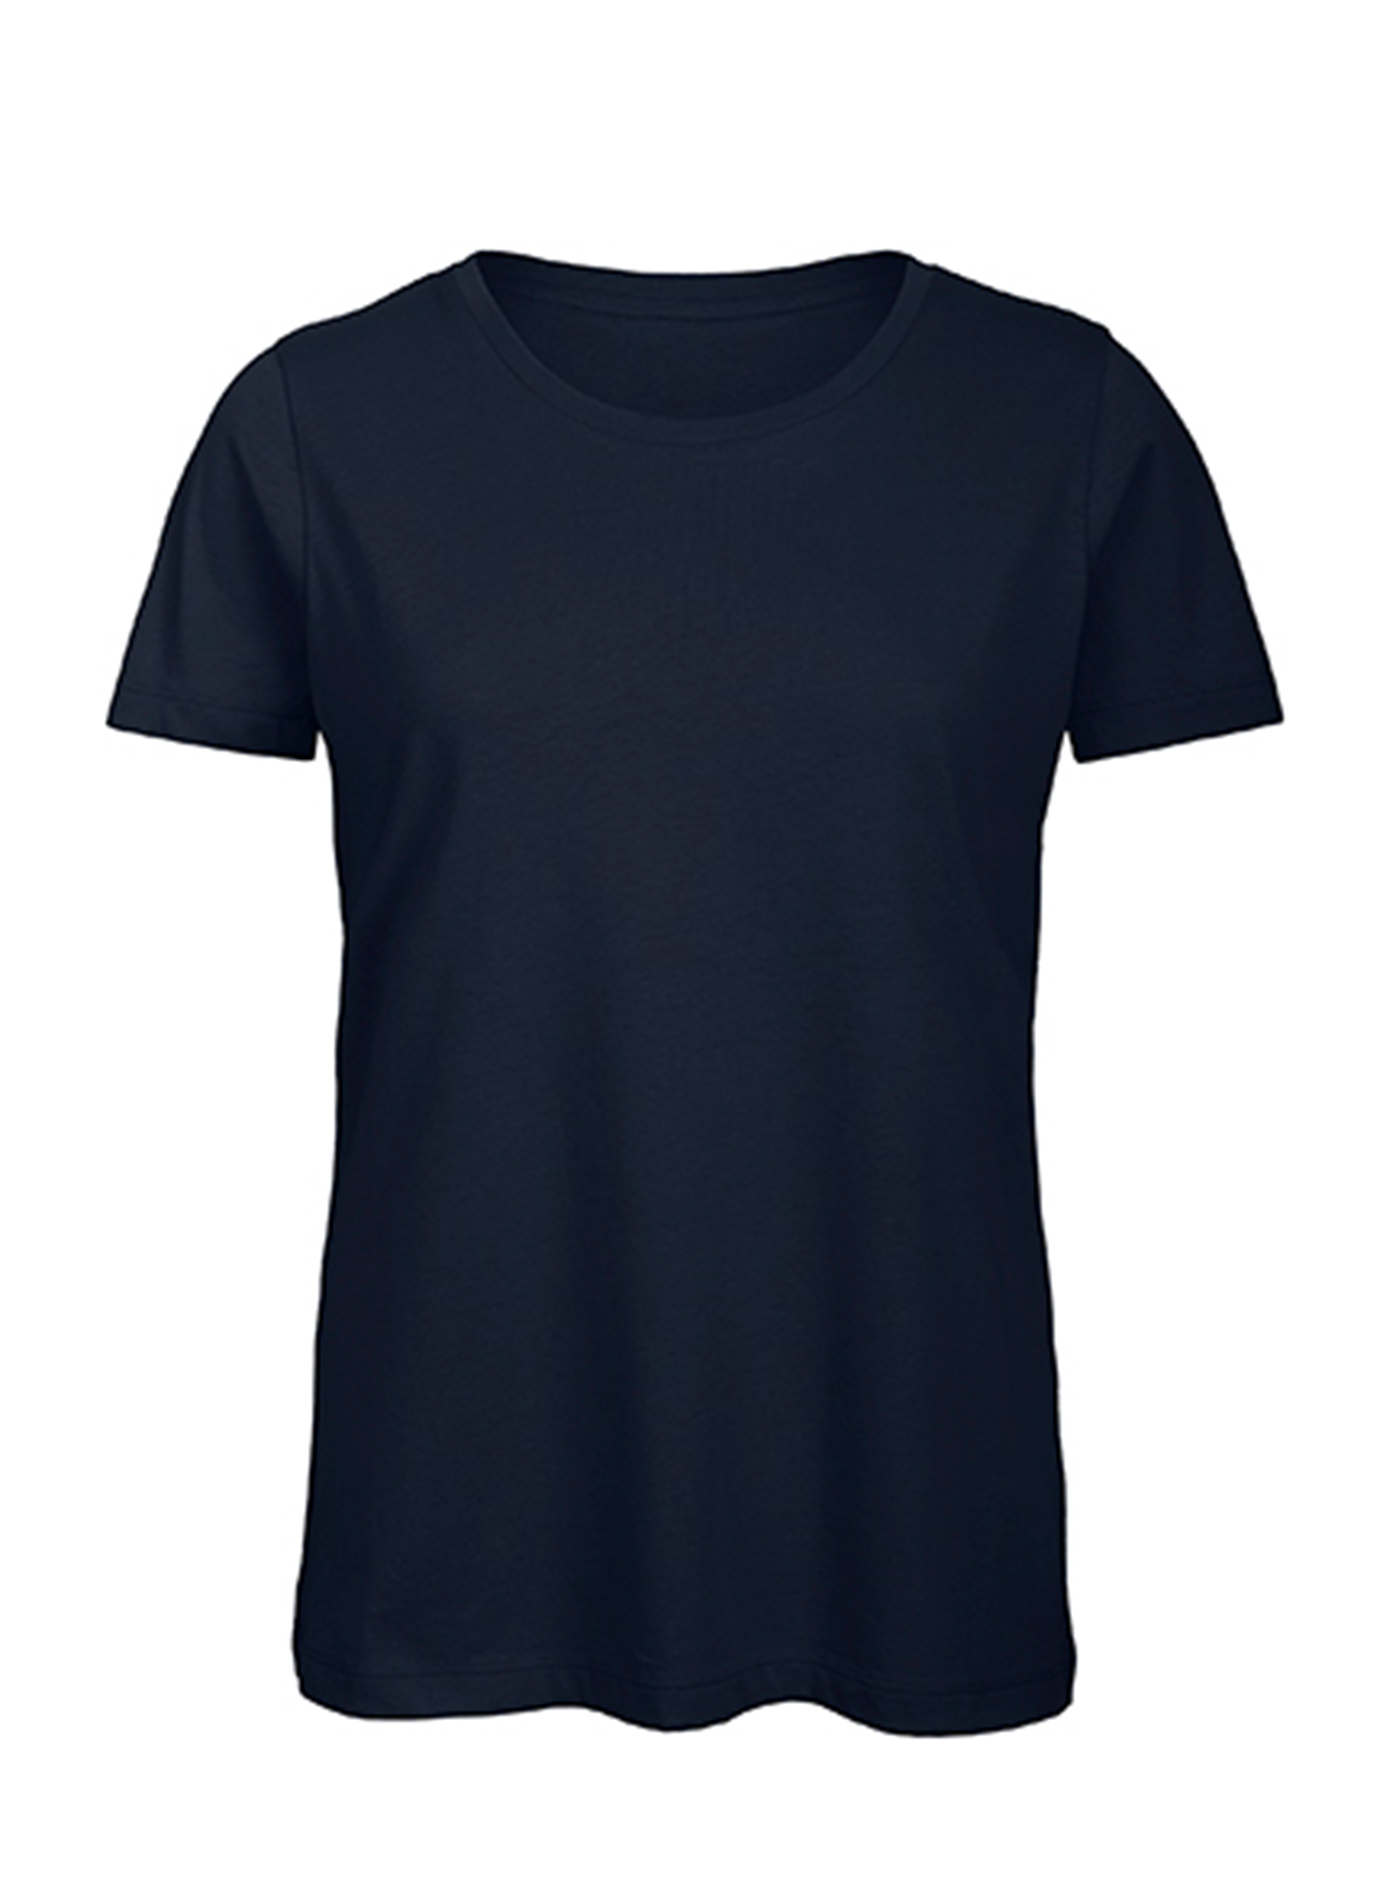 Dámské tričko B&C Collection Inspire - Námořnická modrá L